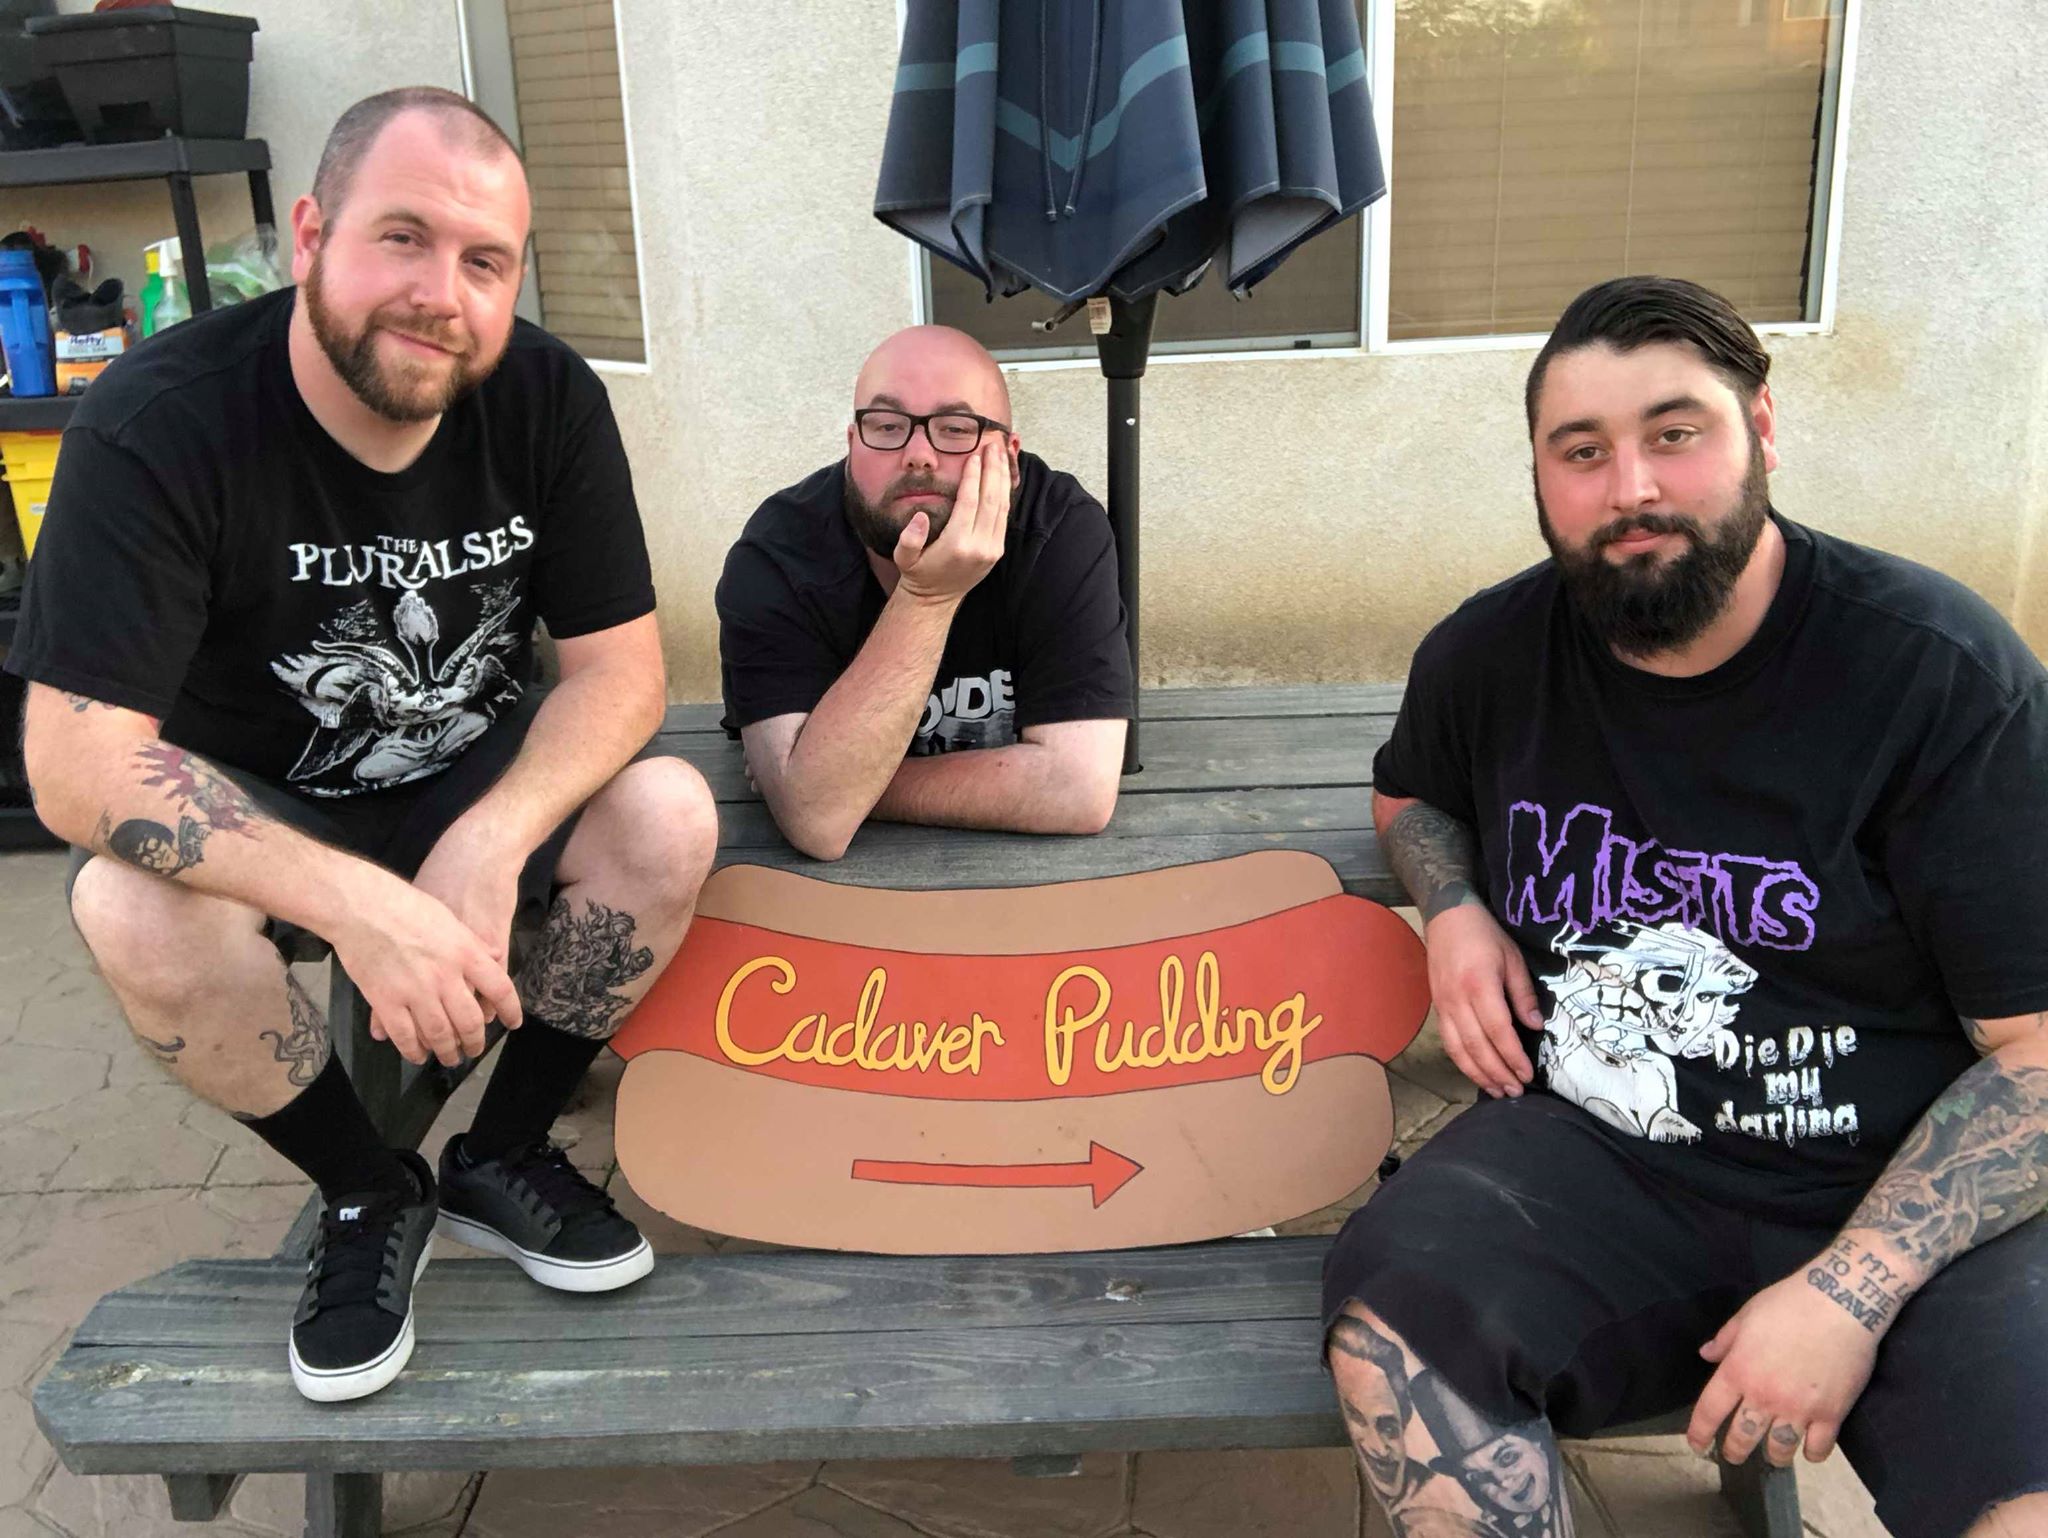 cadaver_pudding_hotdog_official